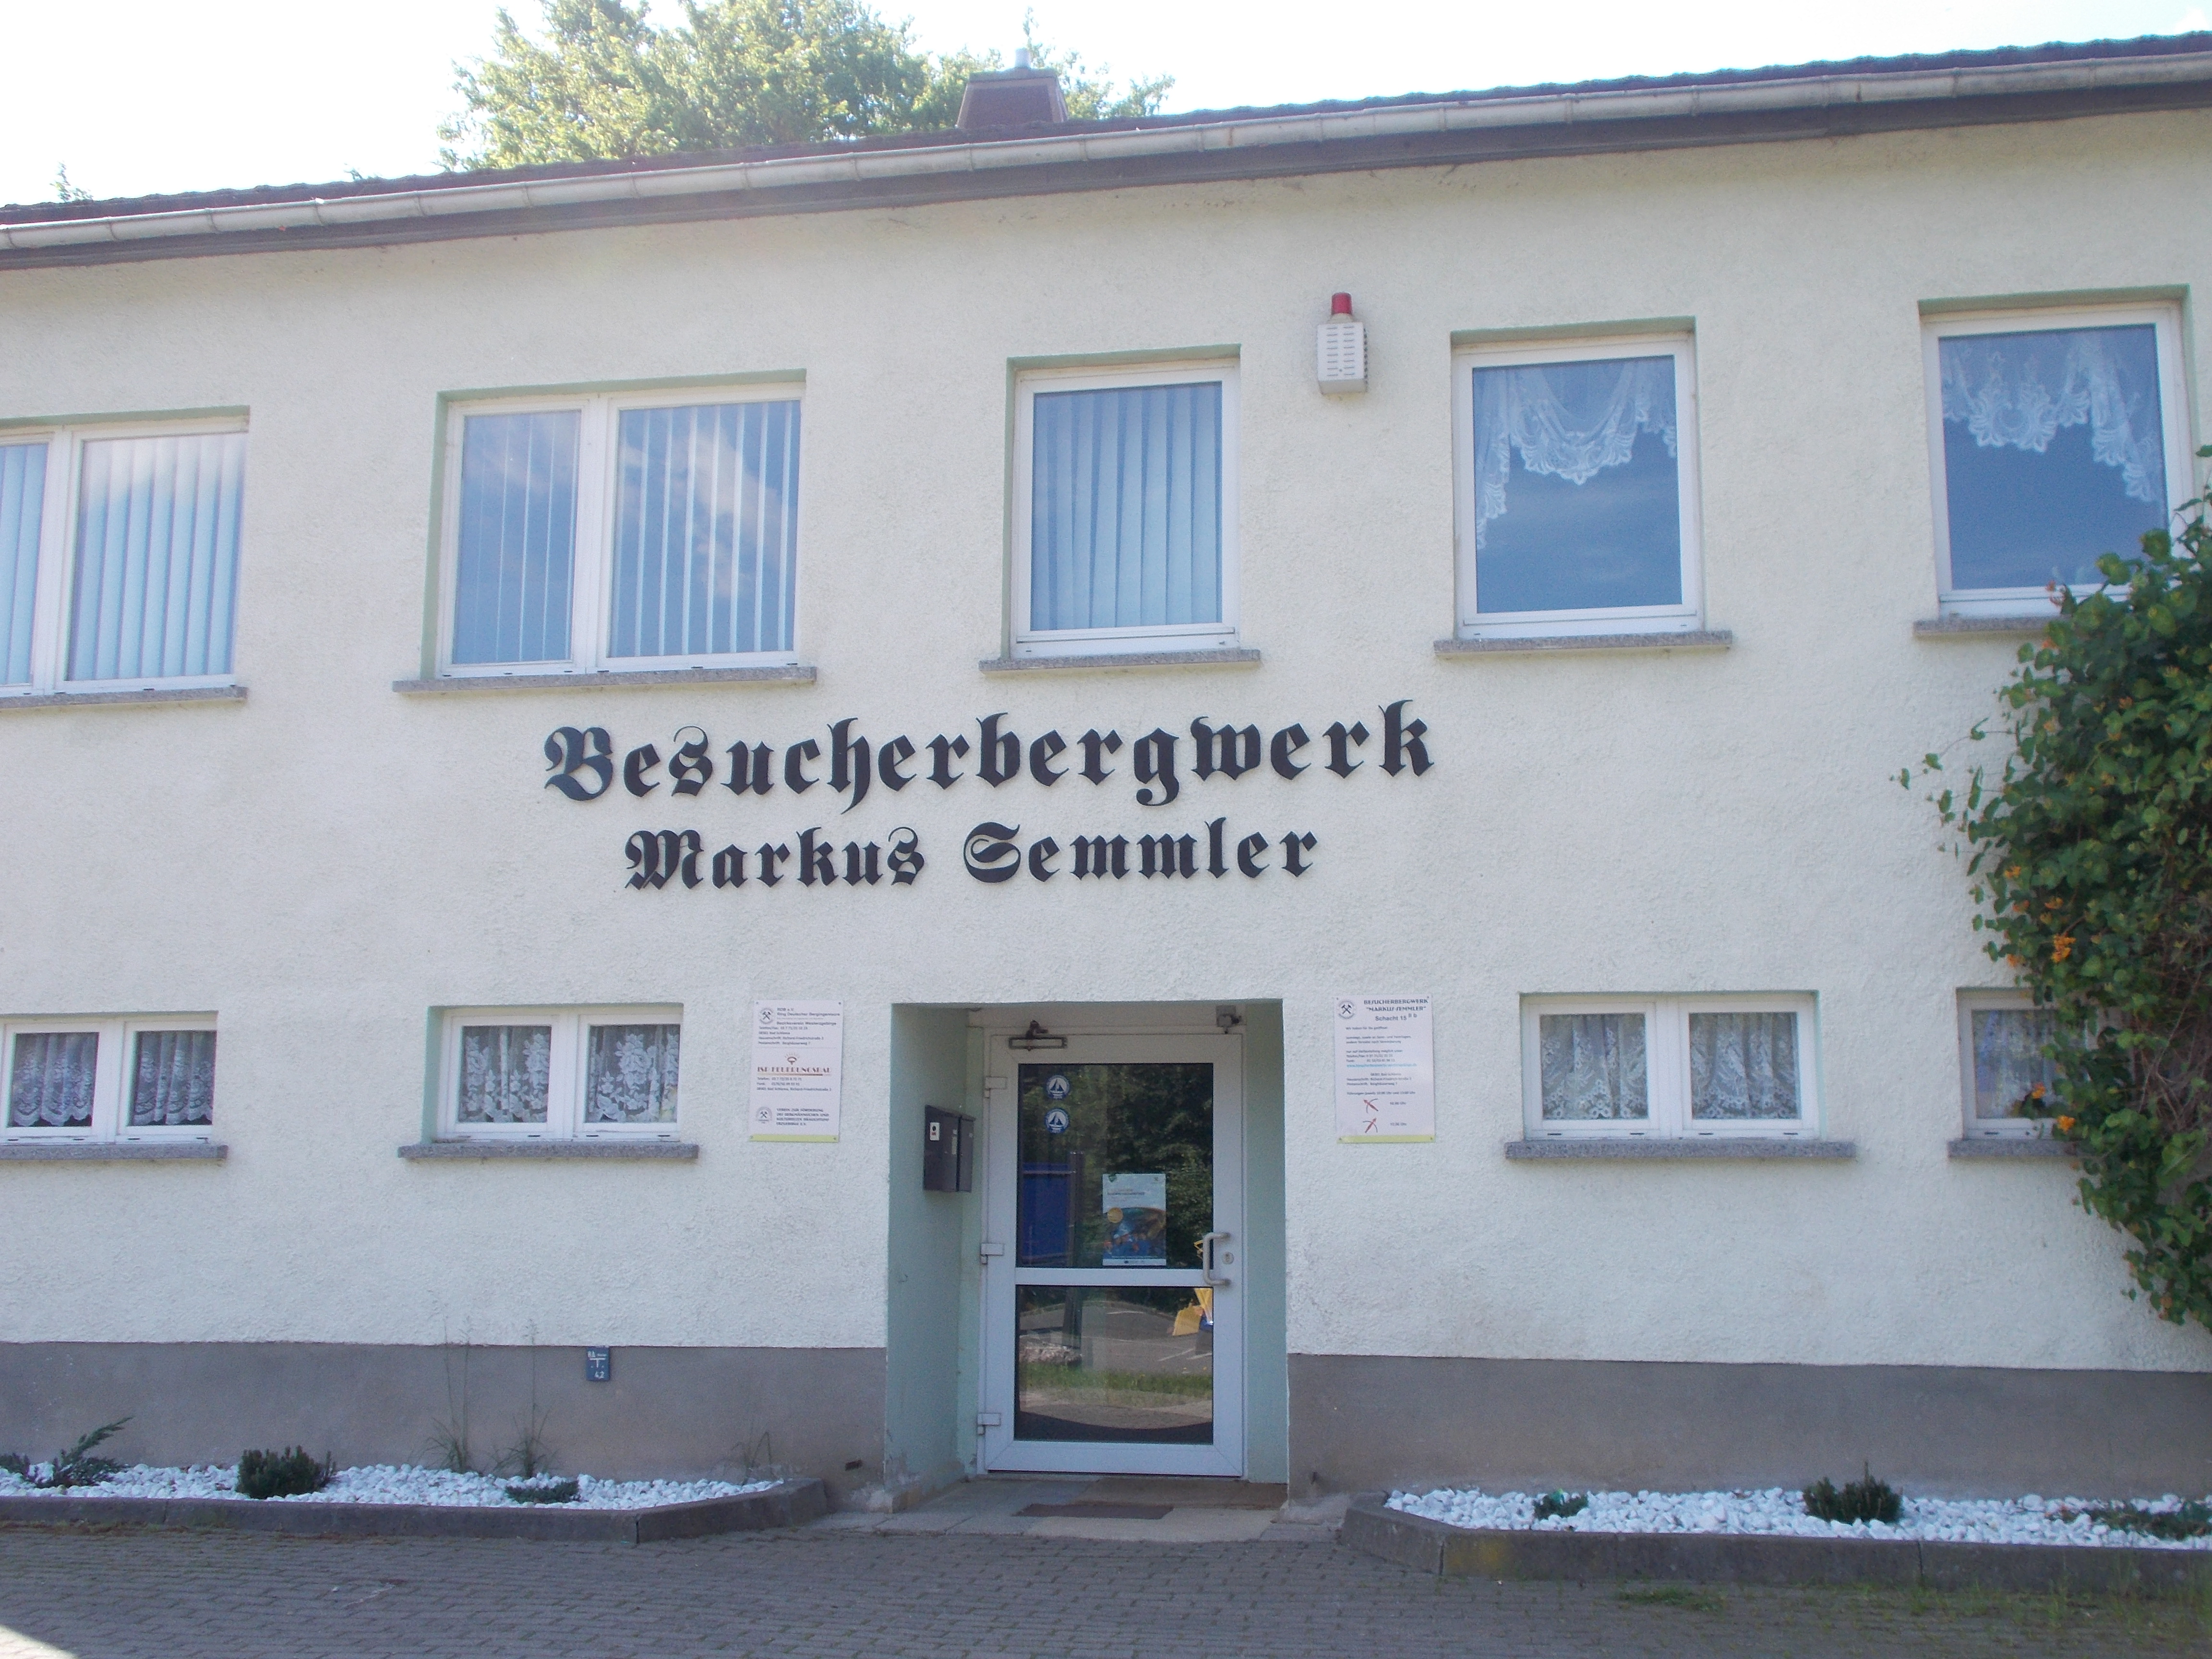 Bild 3 Besucherbergwerk "Markus Semmler" in Bad Schlema